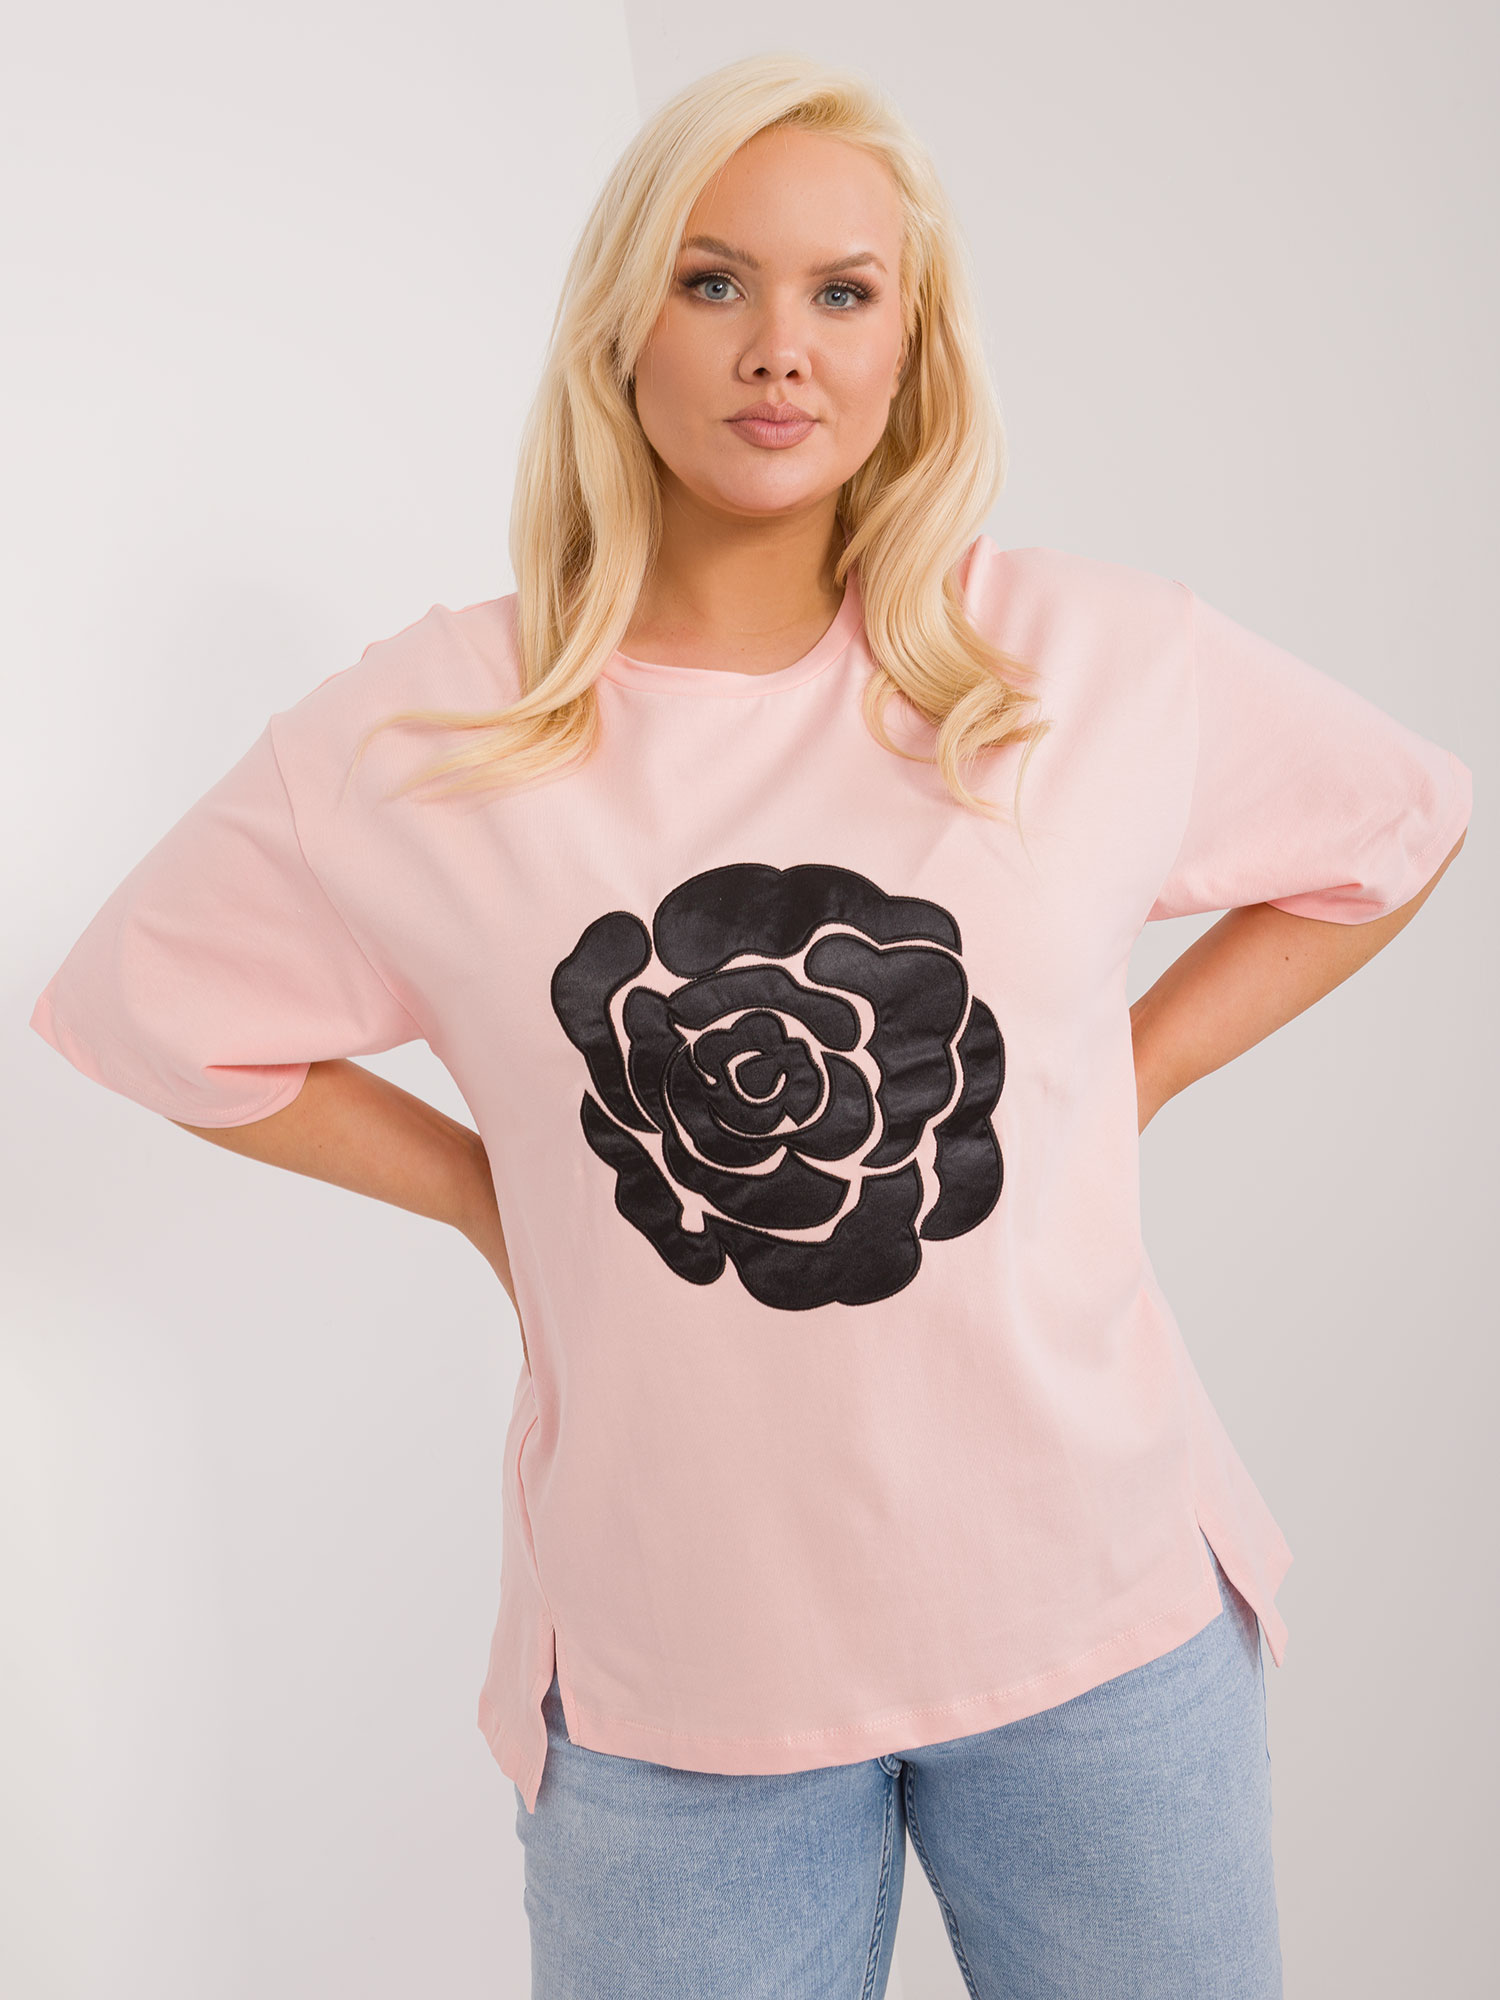 Světle růžové tričko s aplikací květiny -FA-BZ-9325.59-light pink Velikost: ONE SIZE